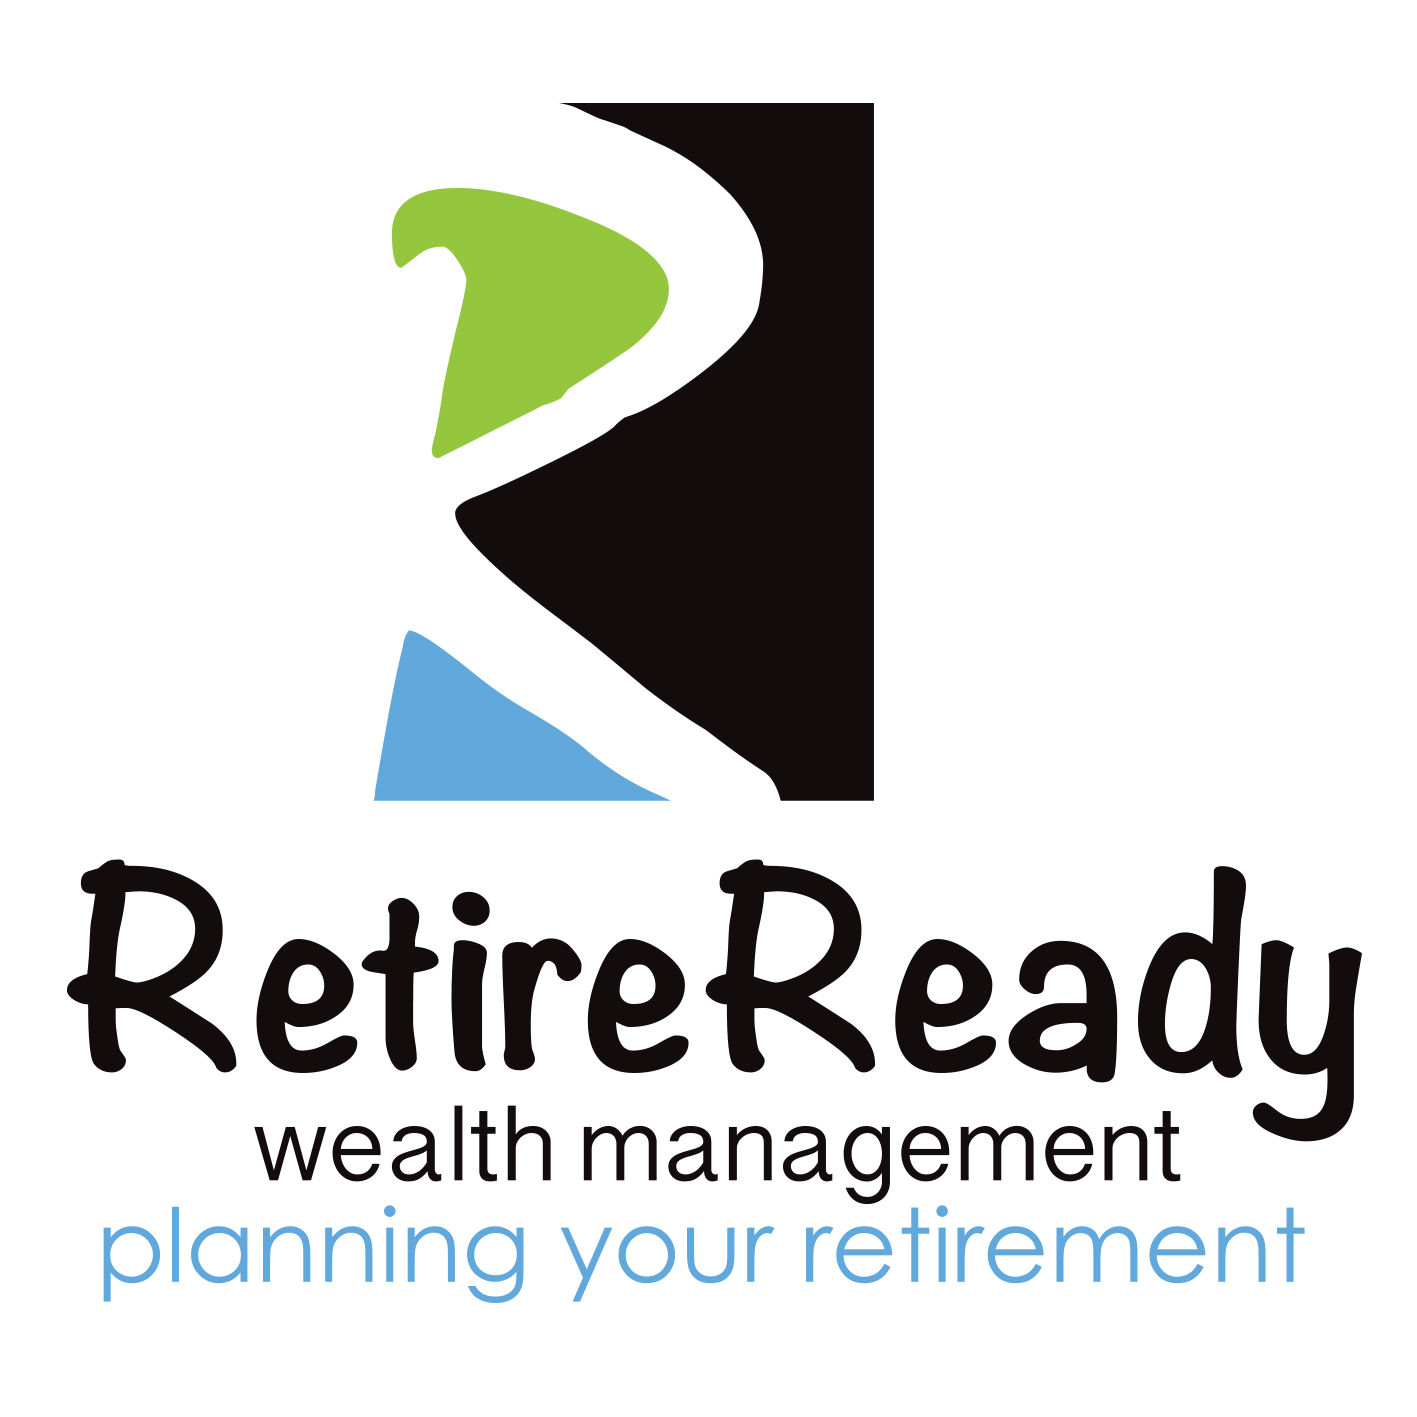 A agência Abundance Web Designs, de Western Australia, Australia, ajudou Retire Ready Wealth Management a expandir seus negócios usando SEO e marketing digital